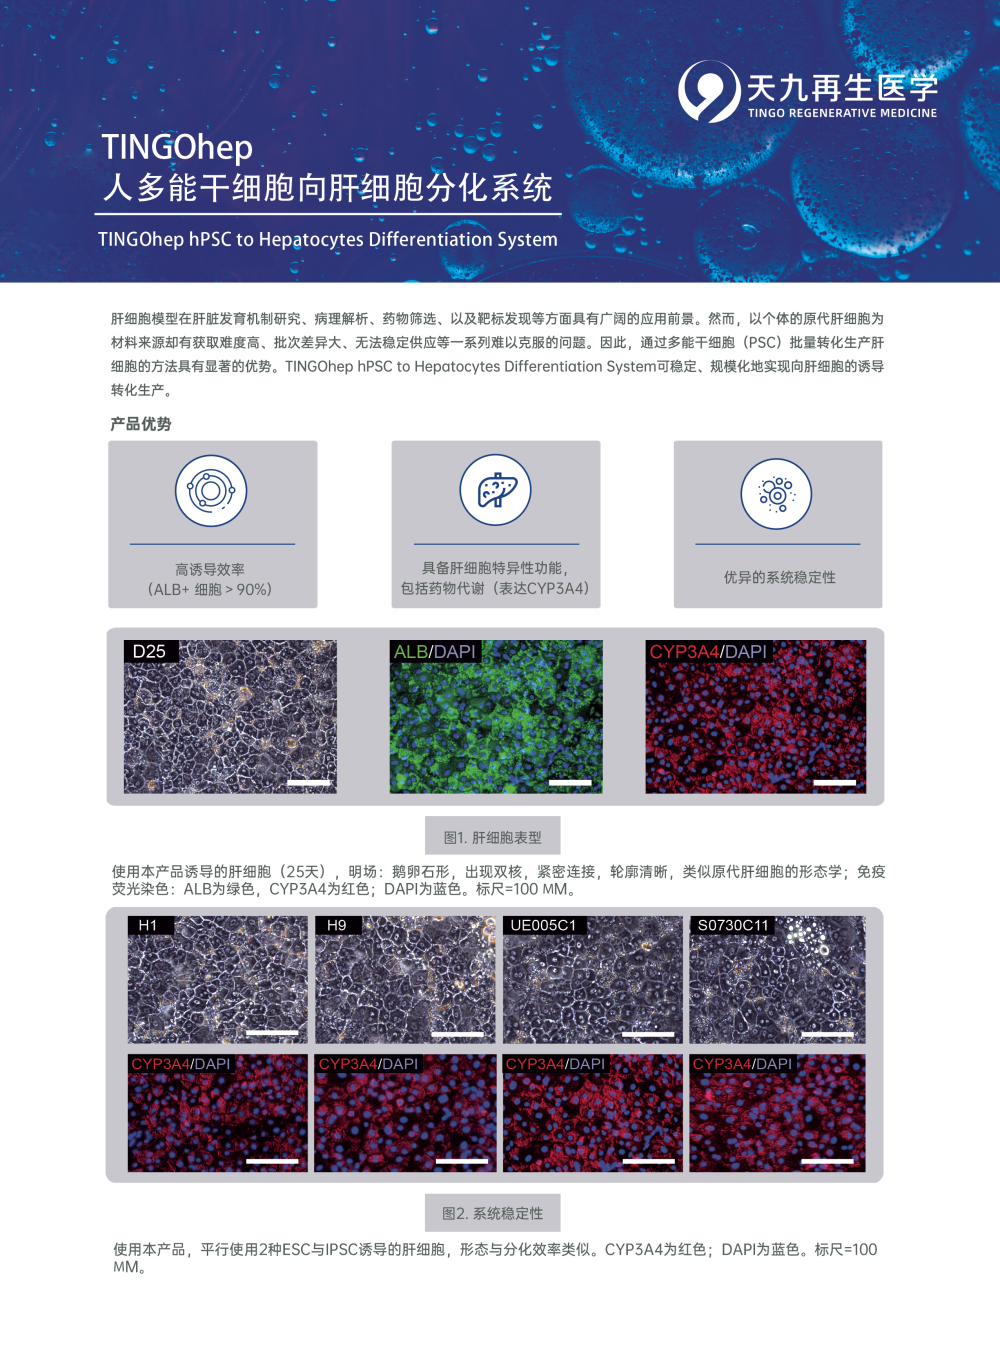 TINGOhep+人多能干细胞向肝细胞分化系统-反面.jpg